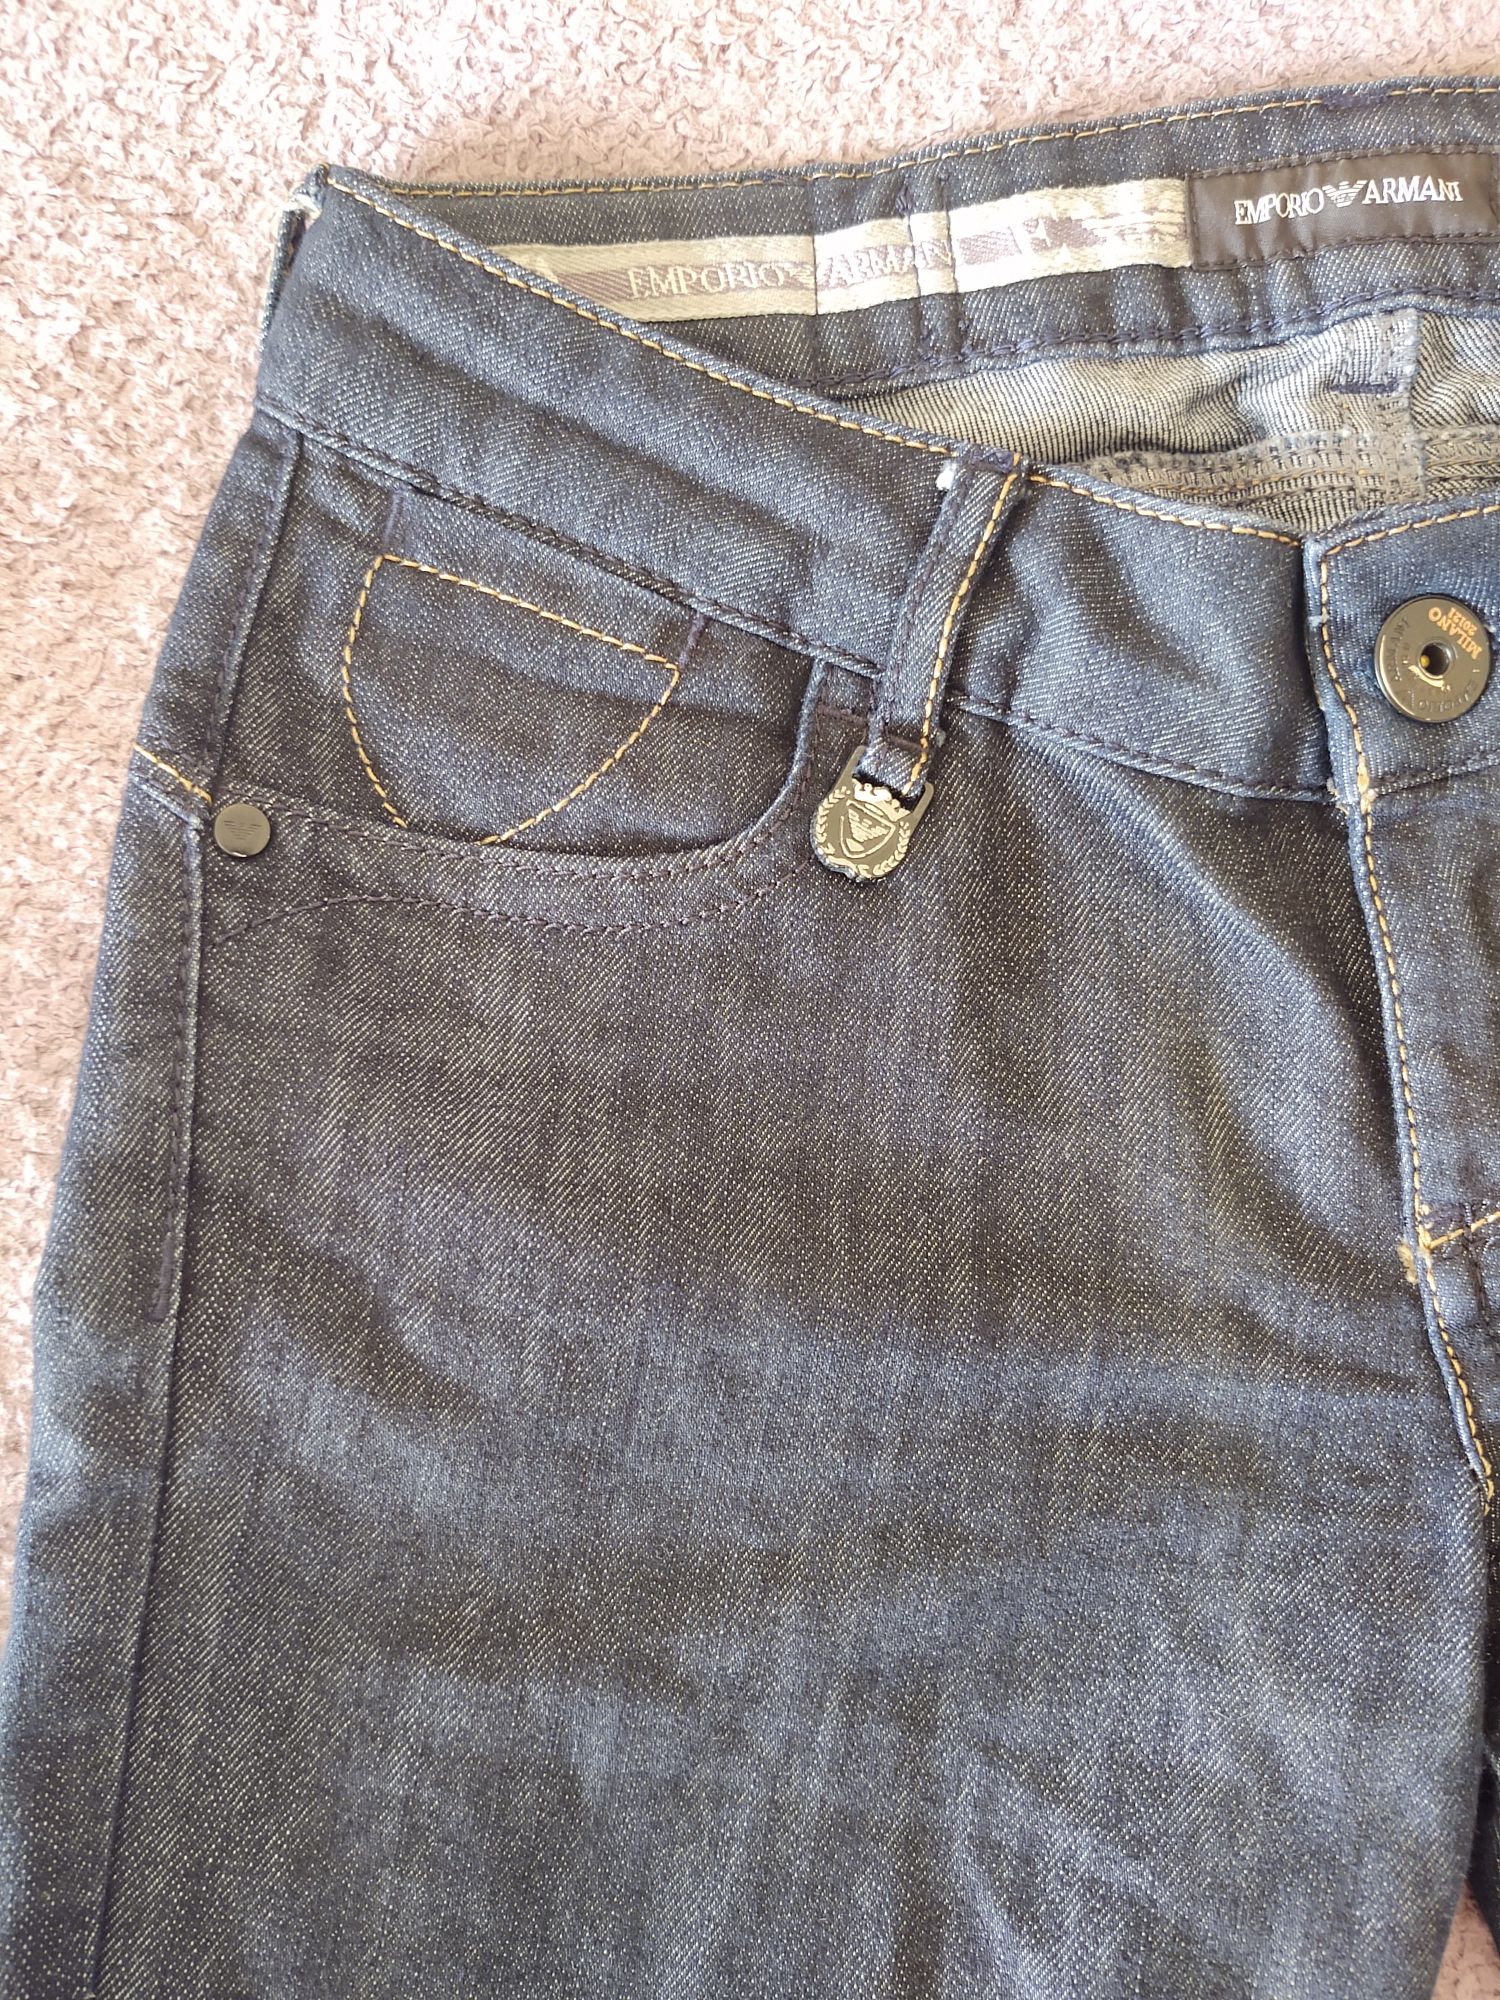 Spodnie Emporio Armani Milano 20121 męskie jeansy